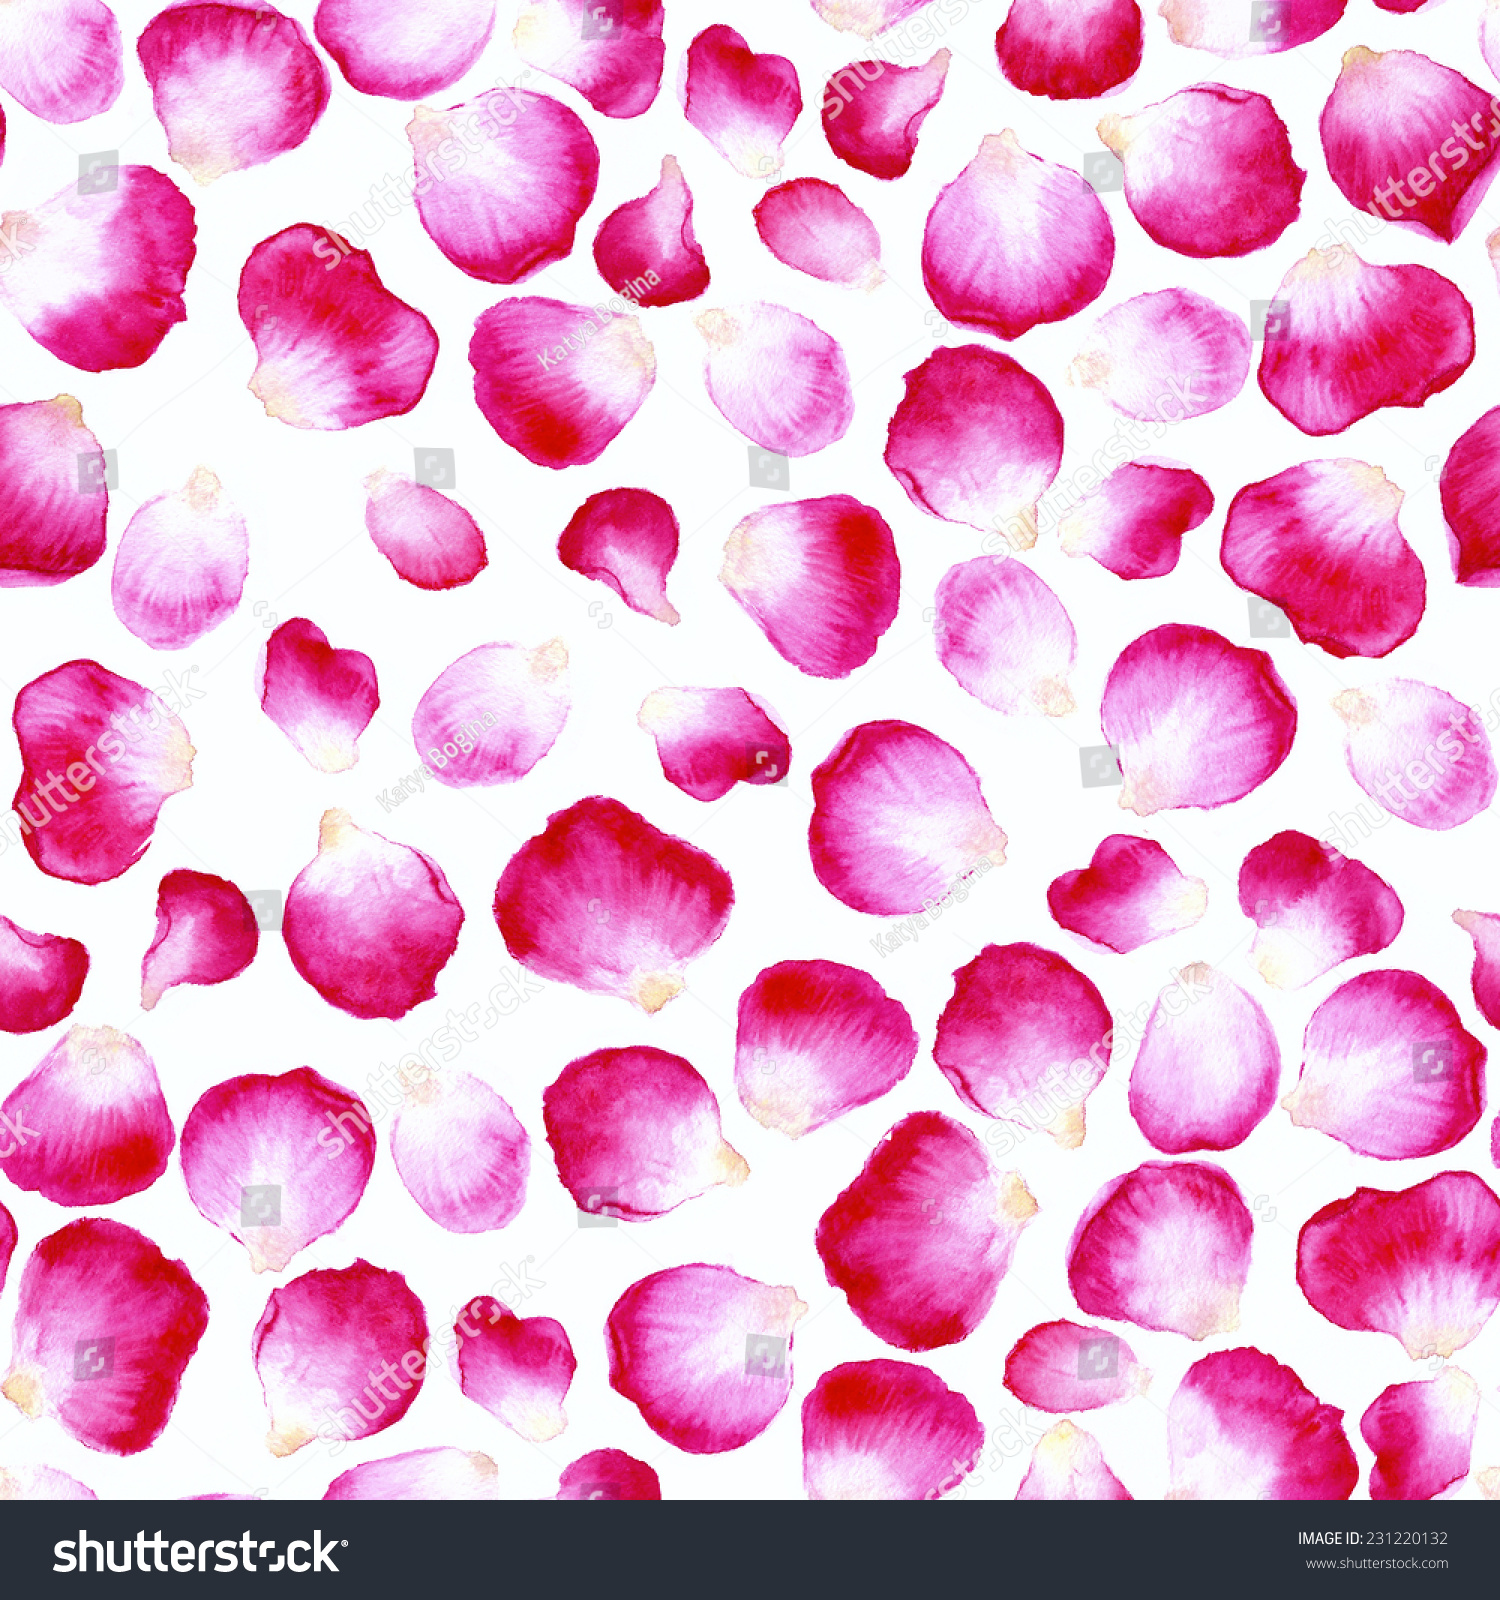 rose petal pattern